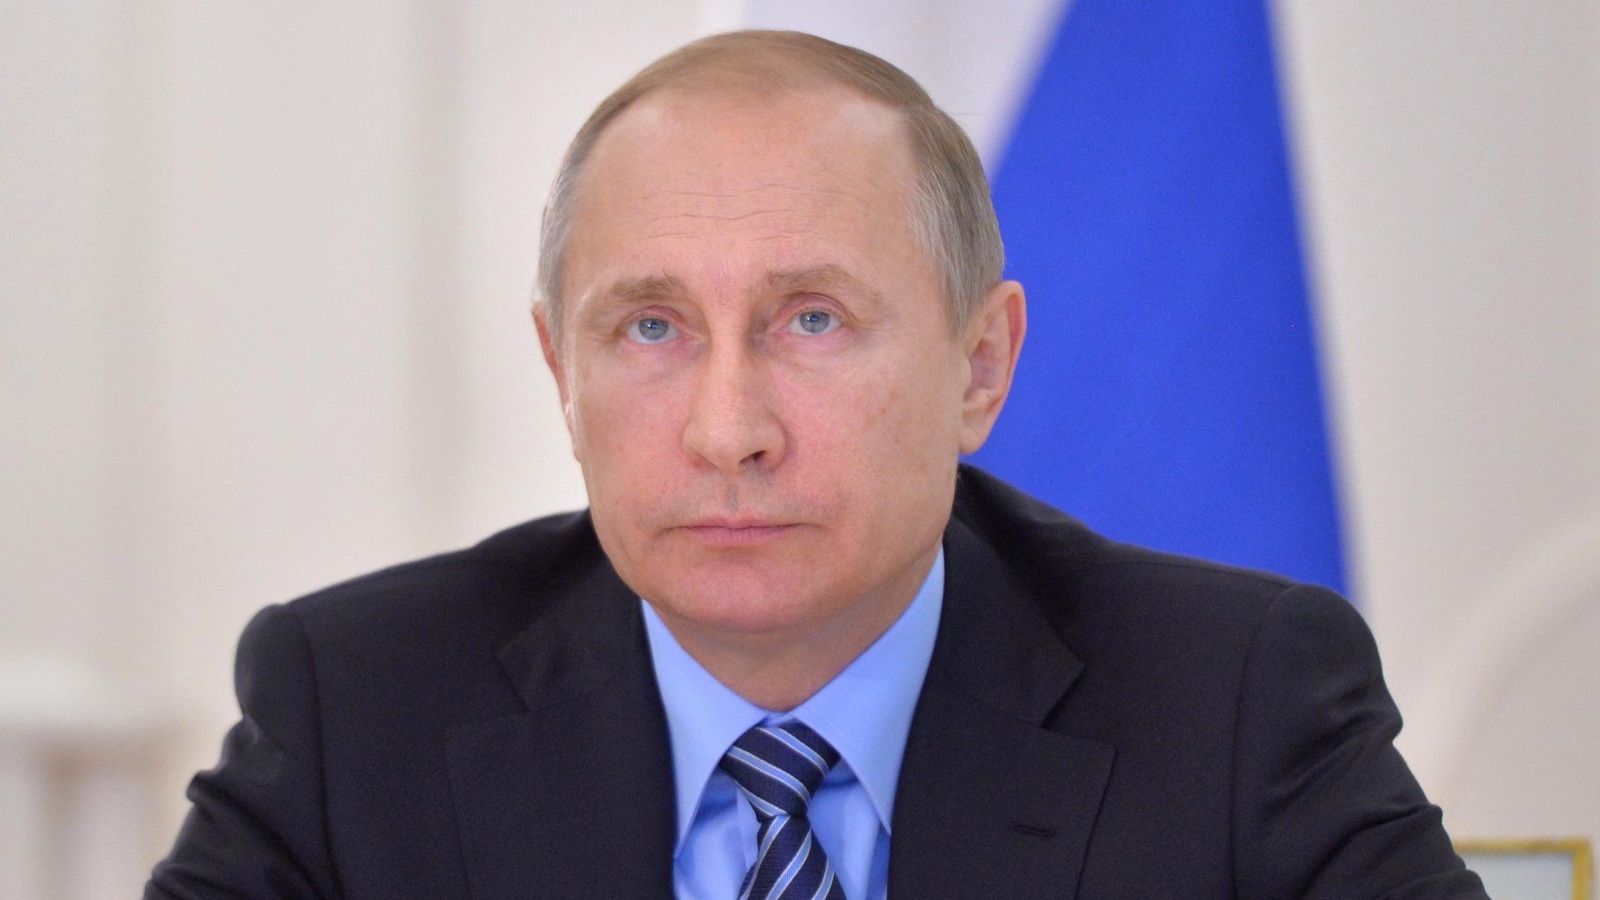 الرئيس الروسي فلاديمير بوتين راهن على دور الشركات العملاقة في السياسة (الأوروبية)